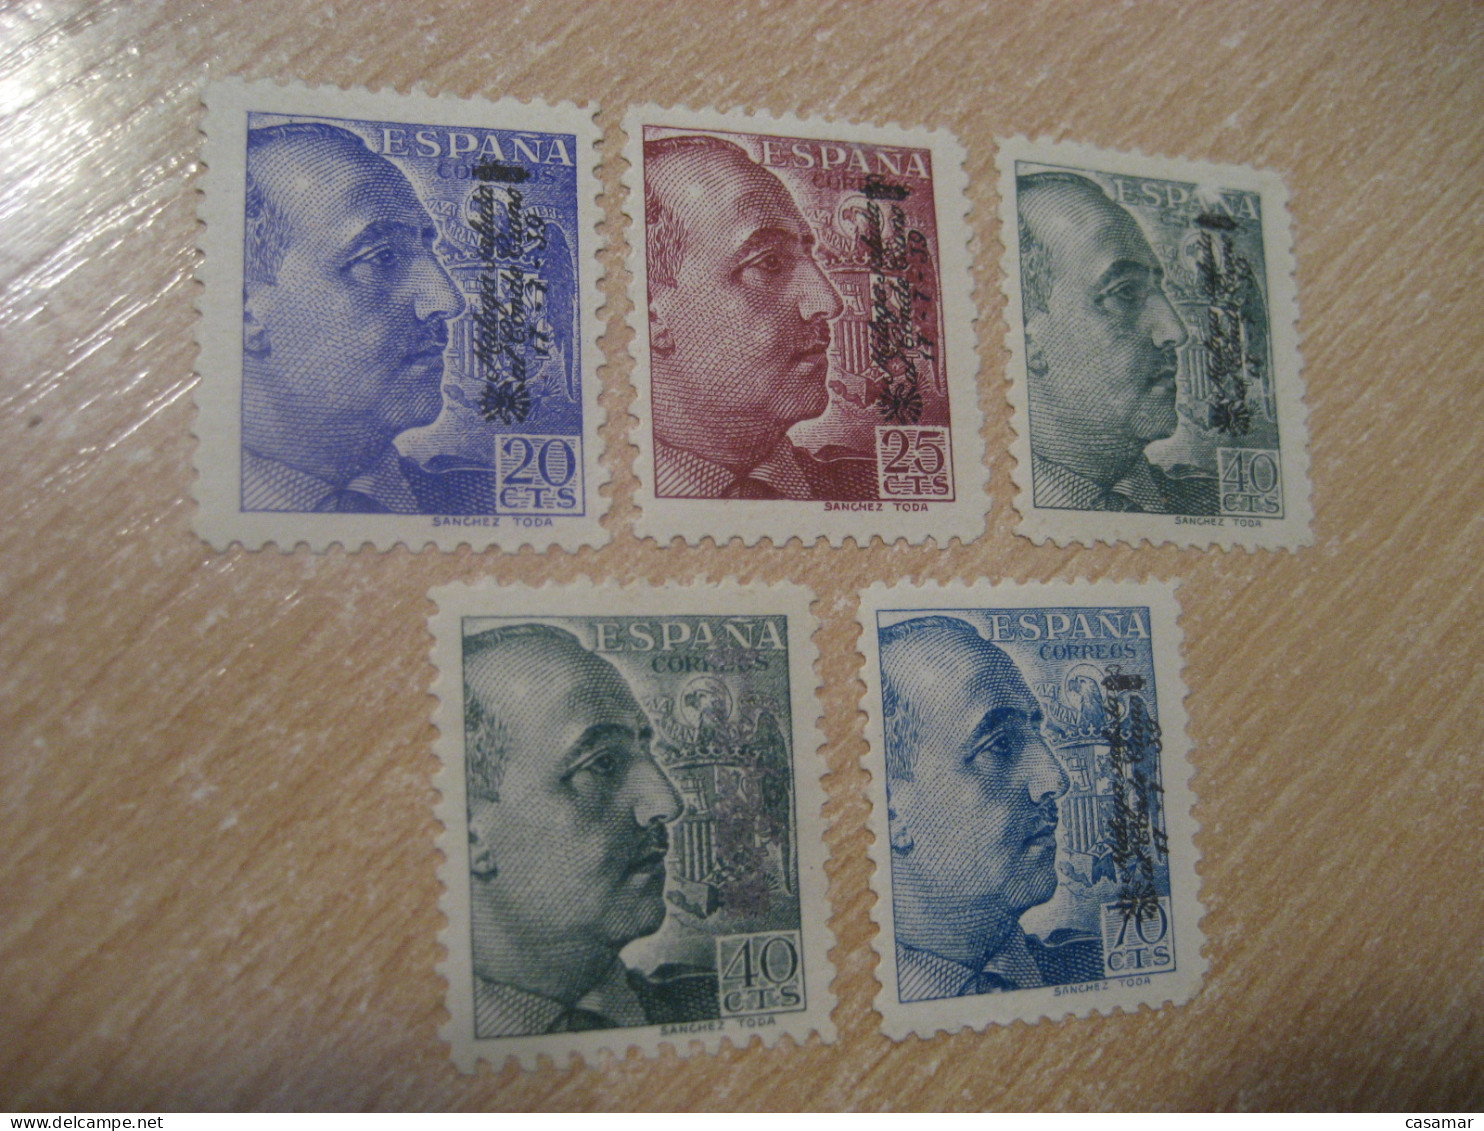 MALAGA SALUDA AL CONDE CIANO 1939 Overprinted SPAIN Franco Sanchez Toda 5 Stamp Civil War Patriotic Militar Military - Emisiones Nacionalistas